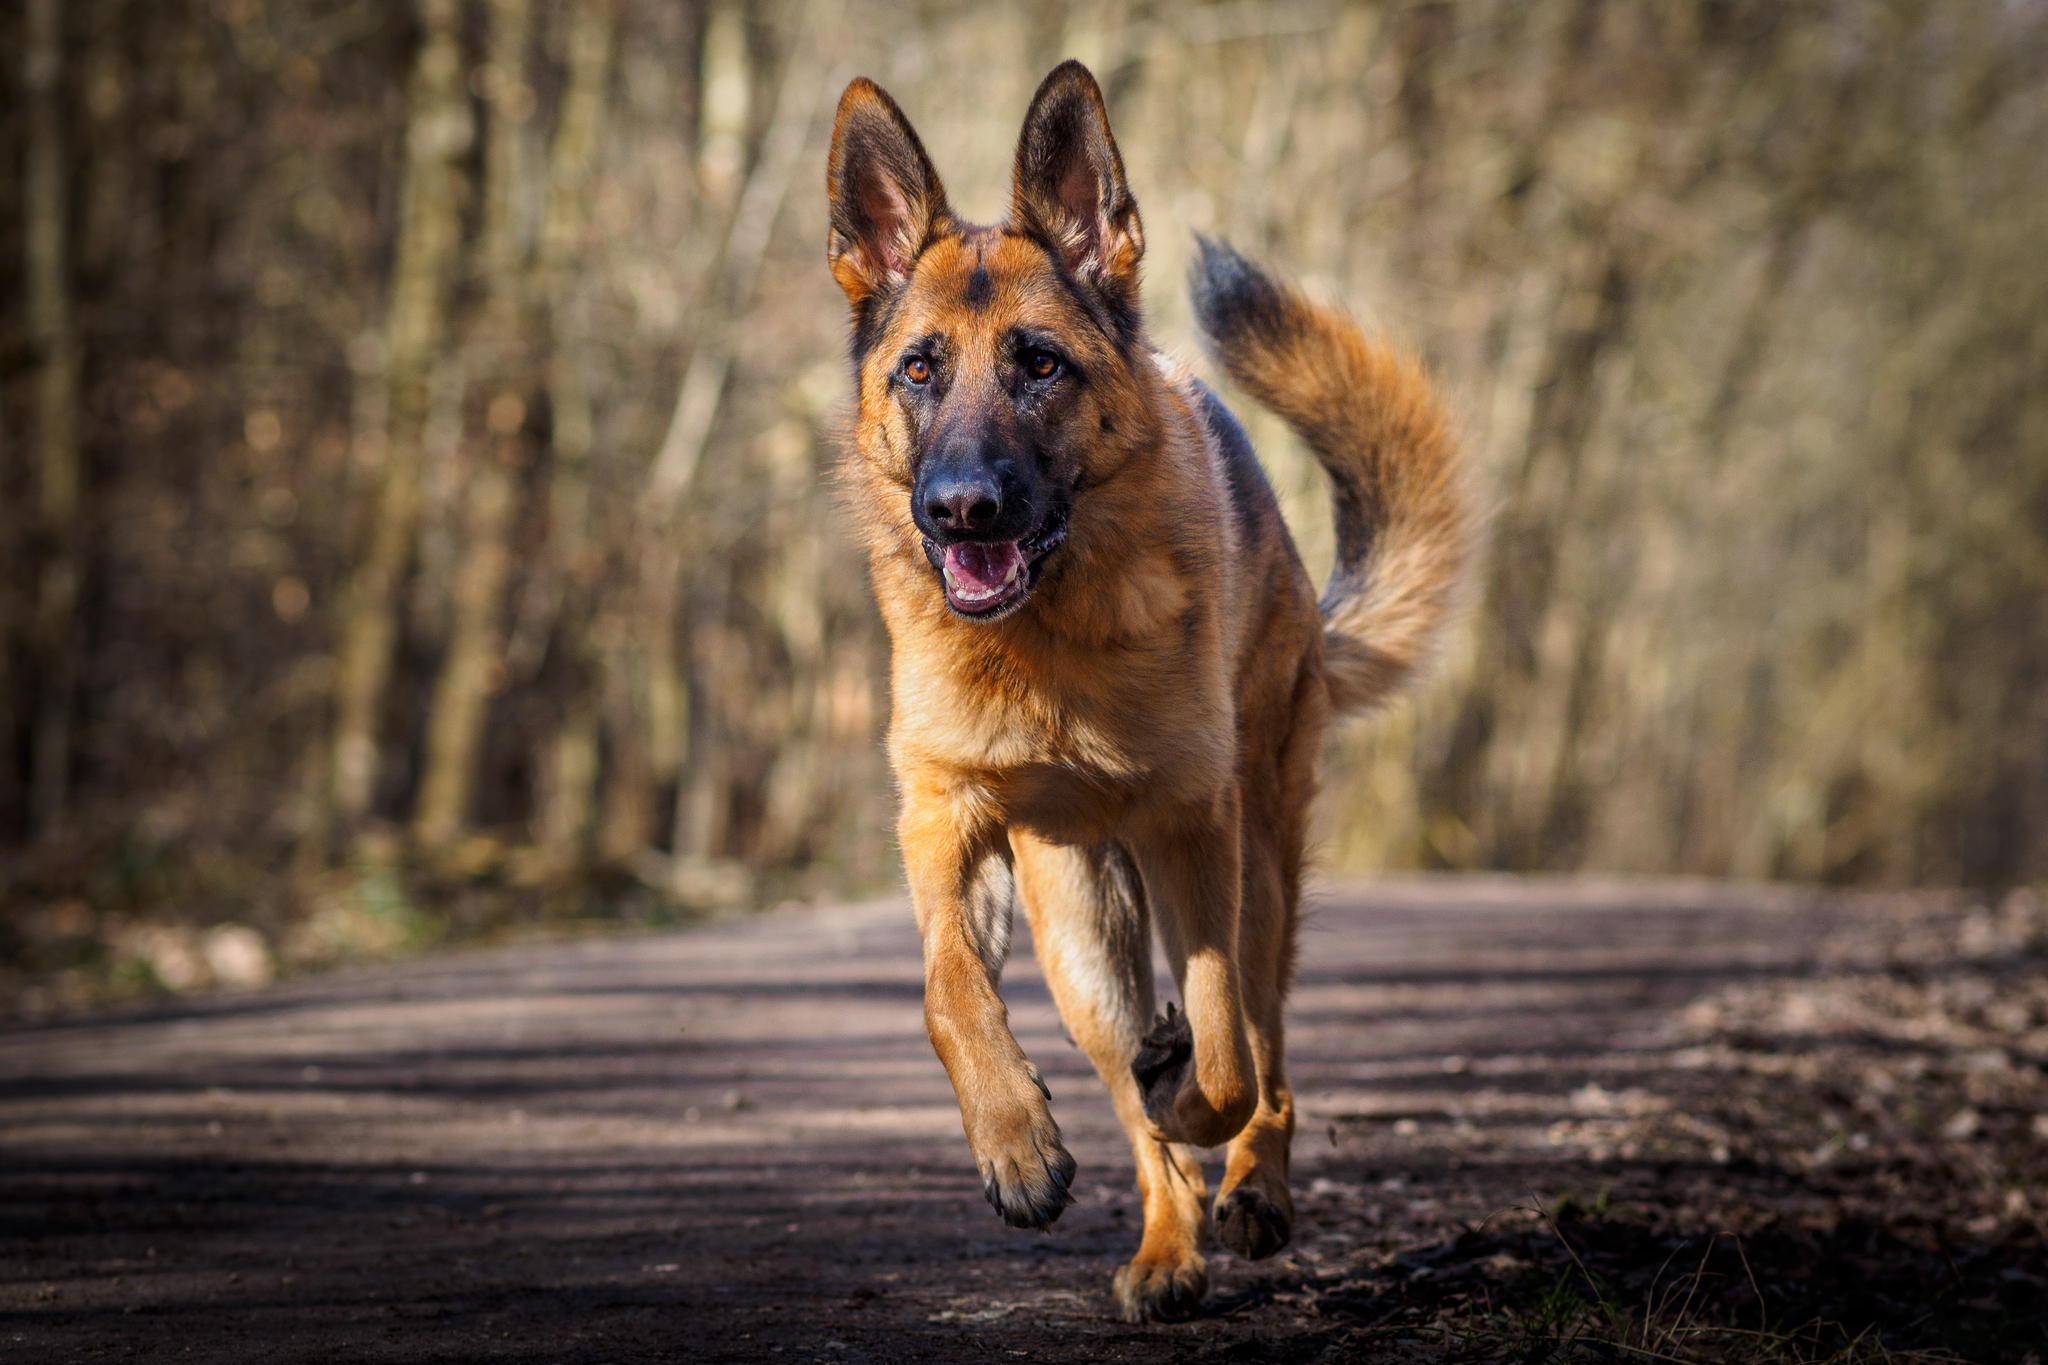 Free download wallpaper Dogs, Dog, Animal, German Shepherd, Running on your PC desktop